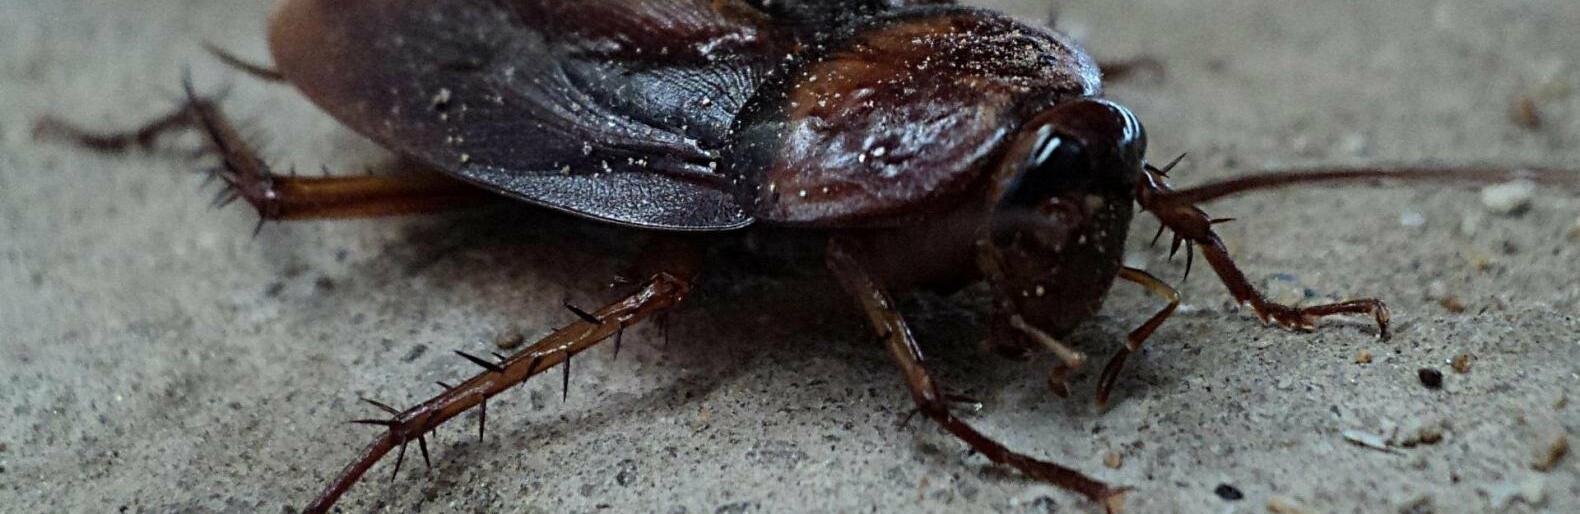 Жители Старого Оскола жалуются на тараканов в школе